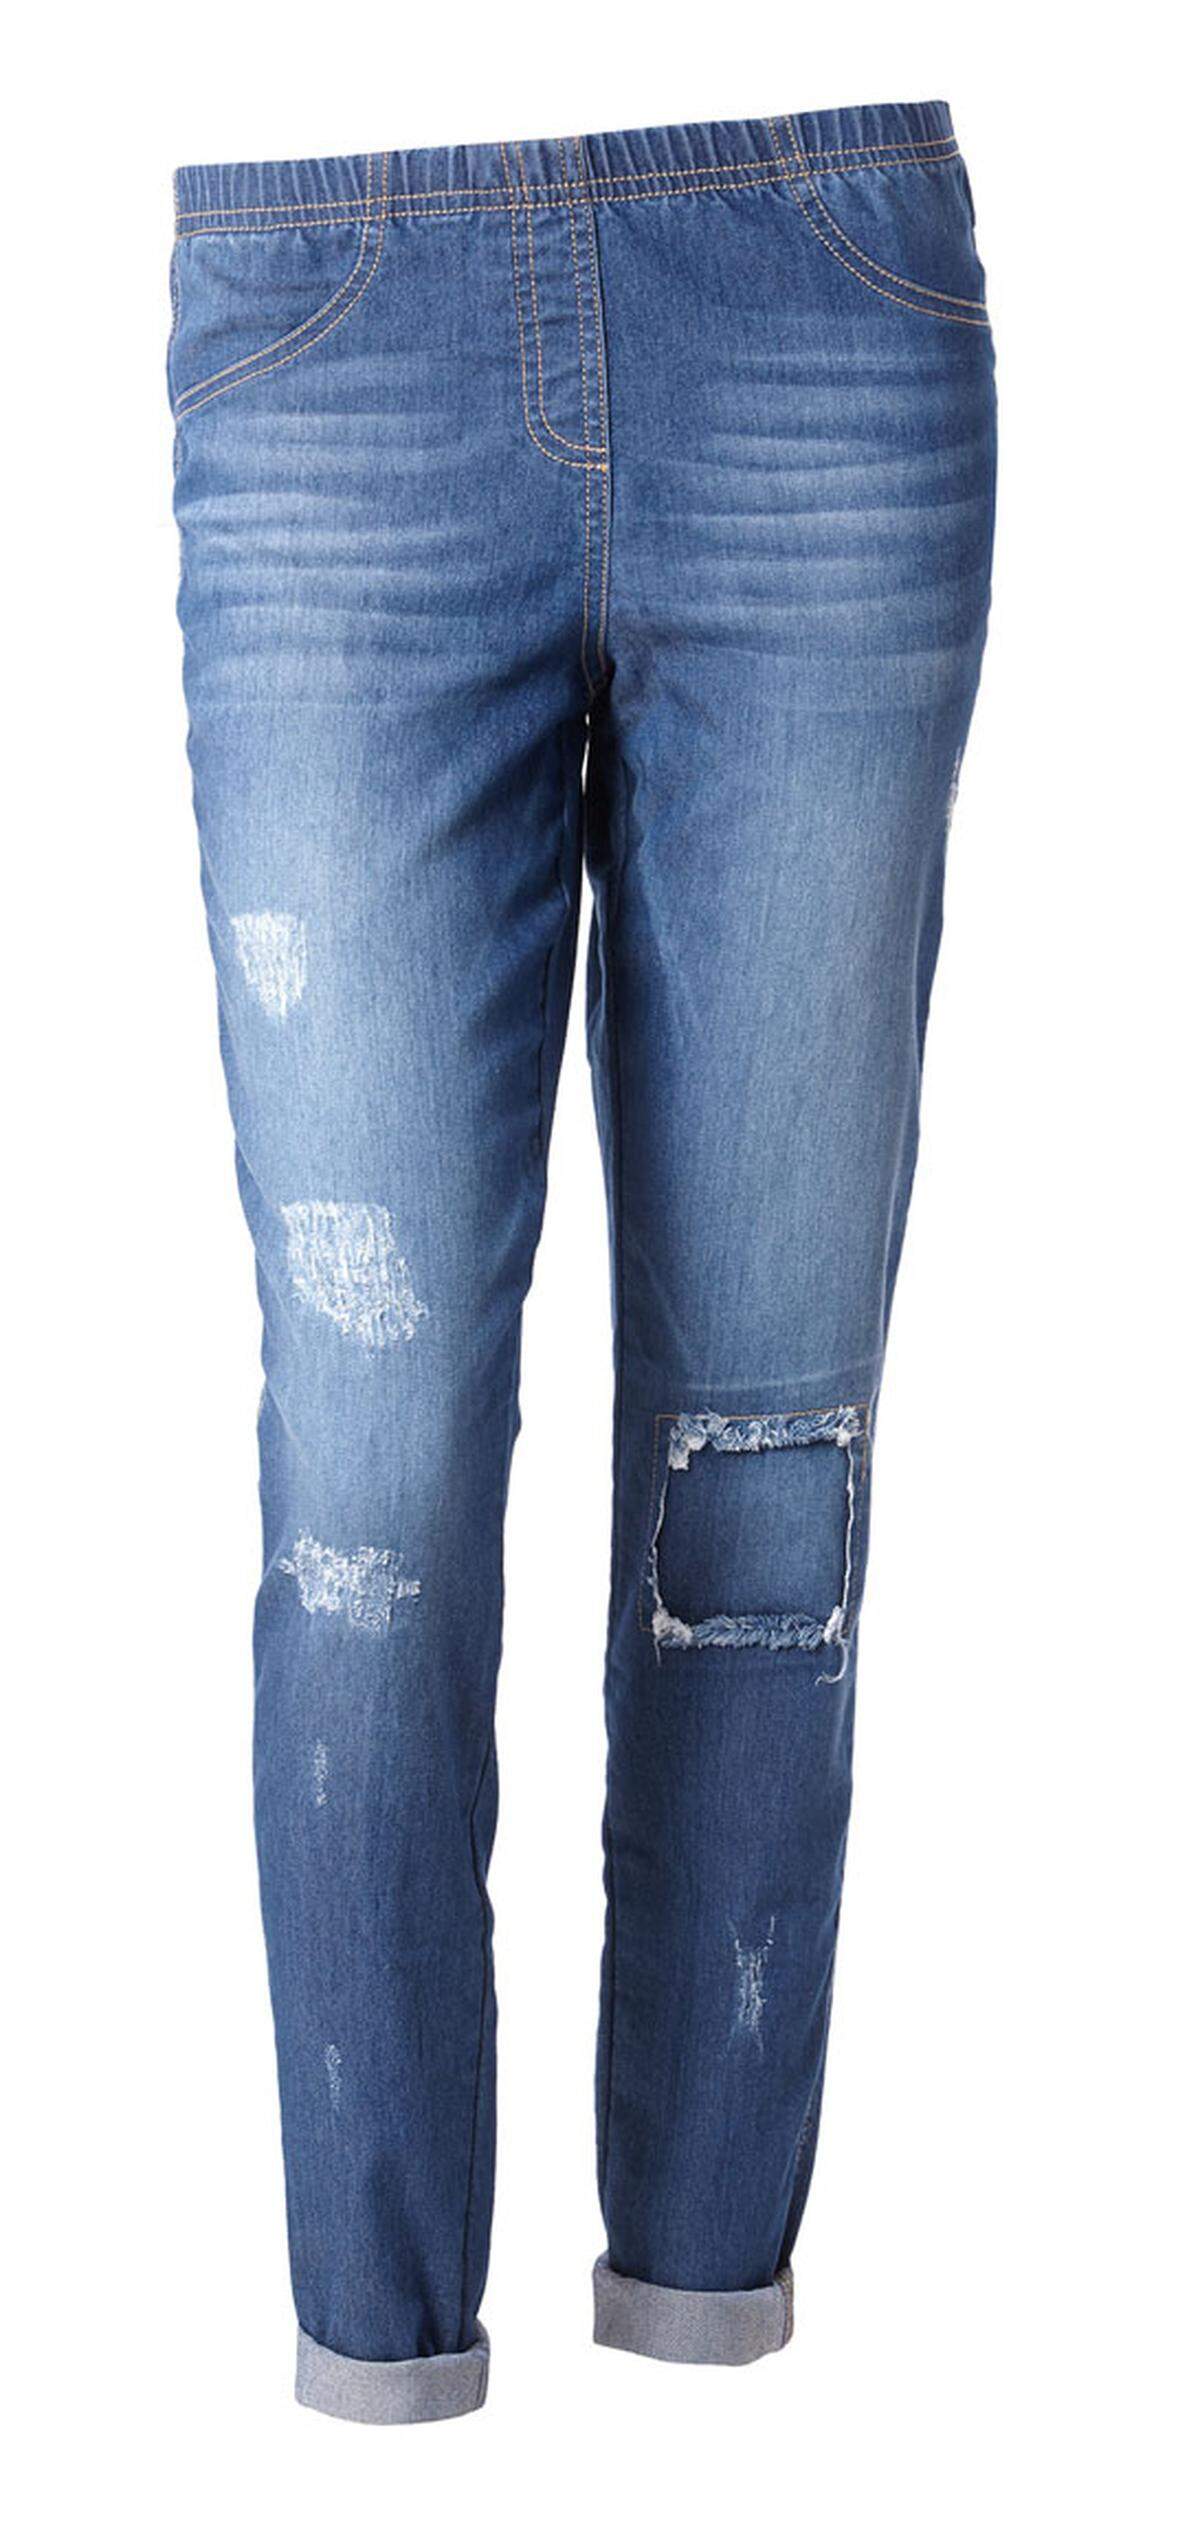 Nicht zu eng und nicht zu weit. Mit den Straight Leg Jeans kann man nichts falsch machen.Alle Jeansmodelle sind Teil der neuen Denim-Kollektion von Calzedonia.